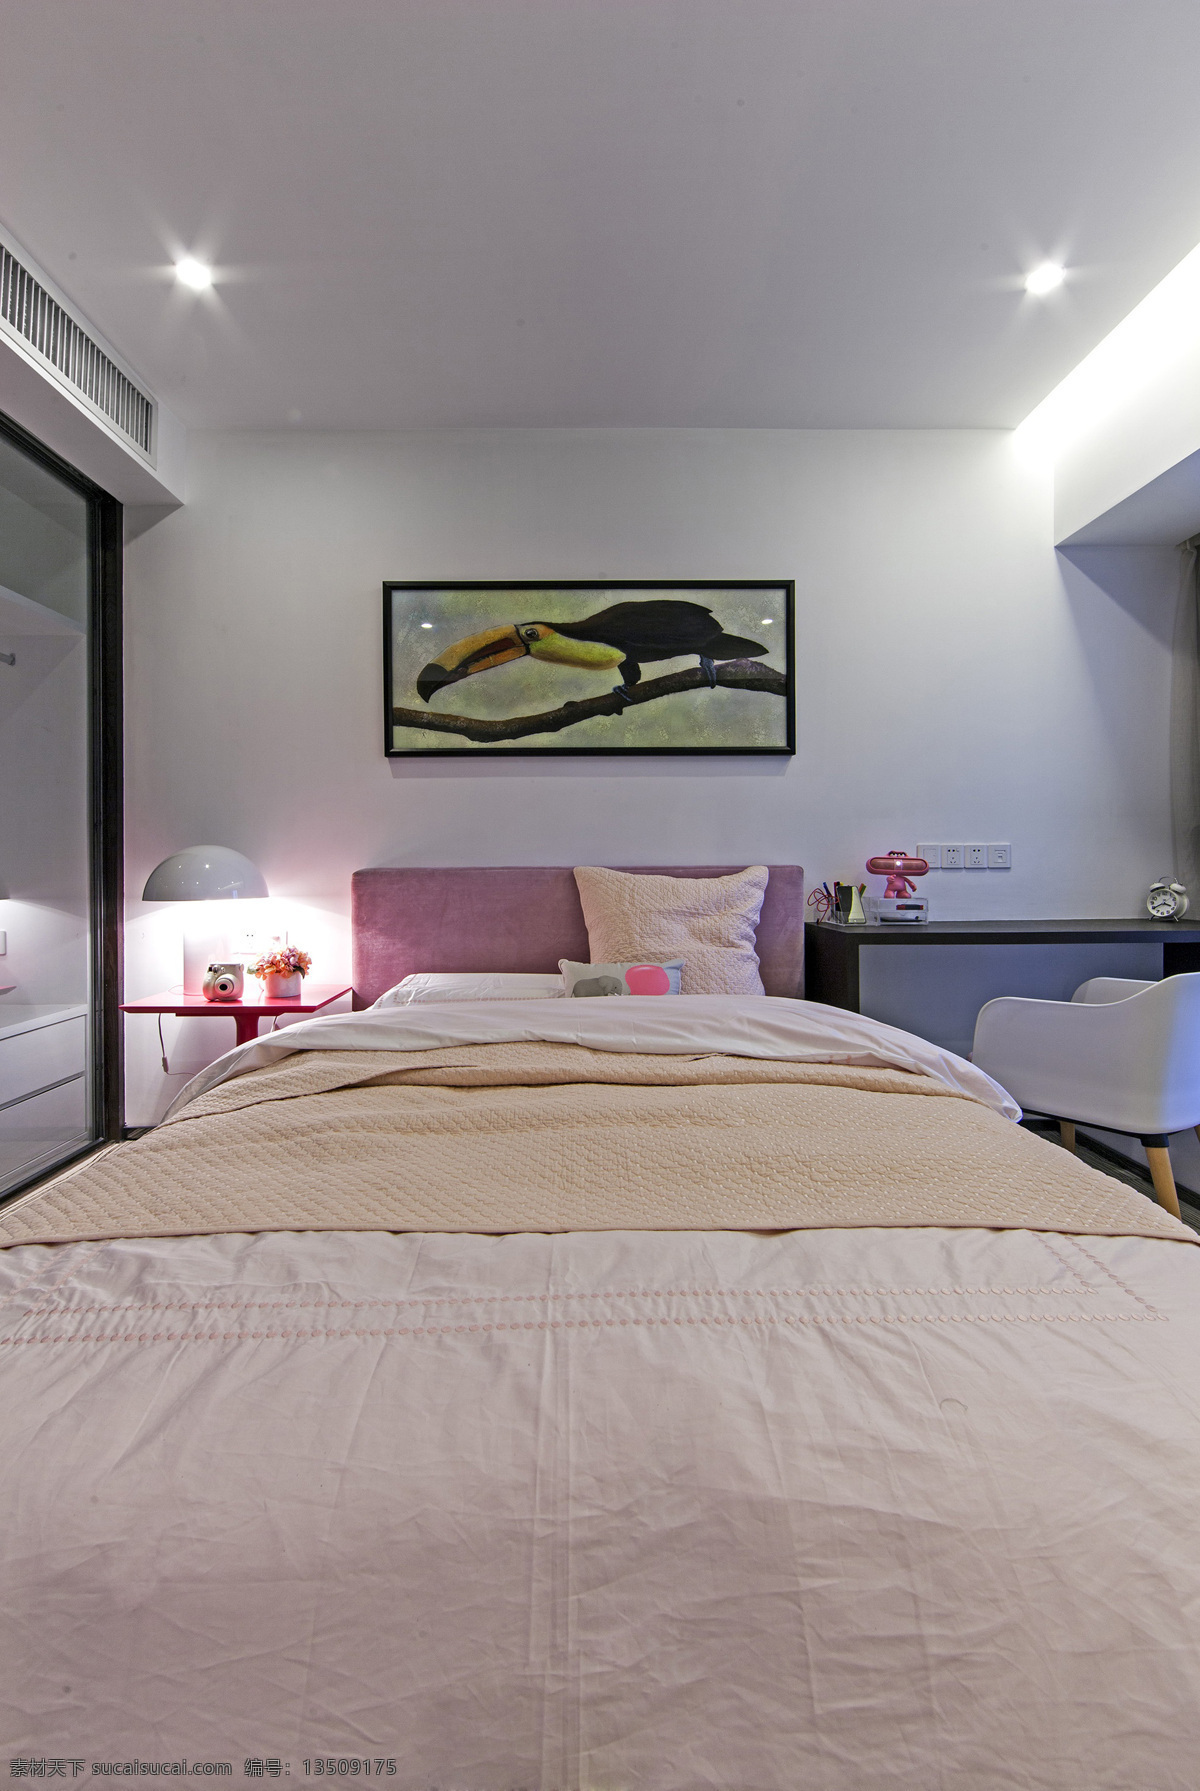 简约 风 室内设计 卧室 壁画 效果图 现代 家装 家居 家具 床 装饰画